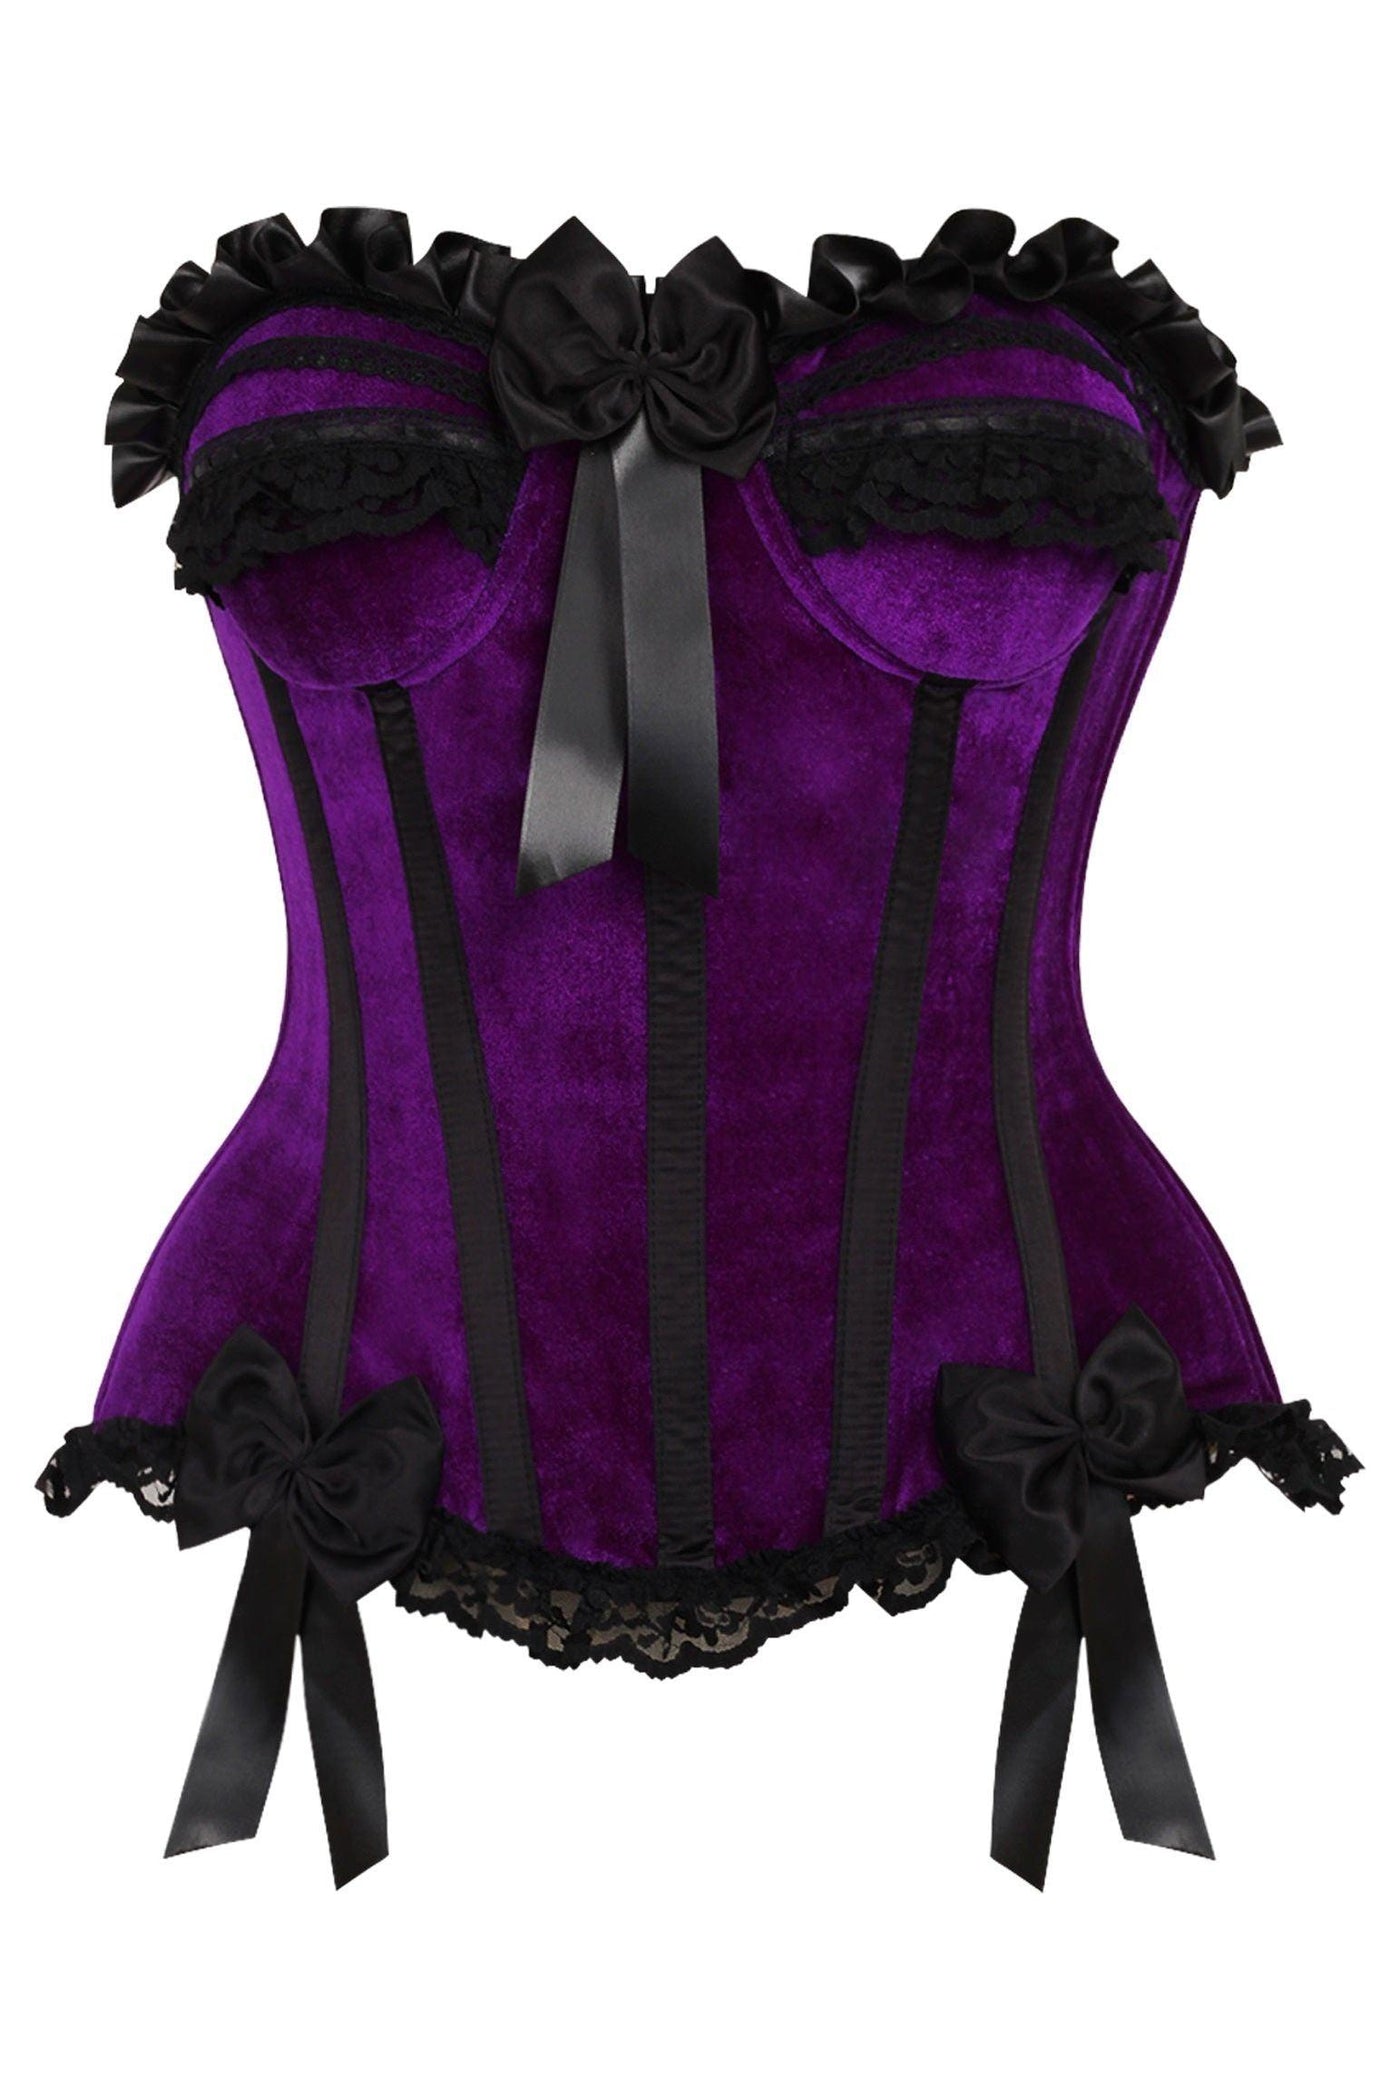 Top Drawer Purple Velvet Steel Boned Burlesque Corset - AMIClubwear